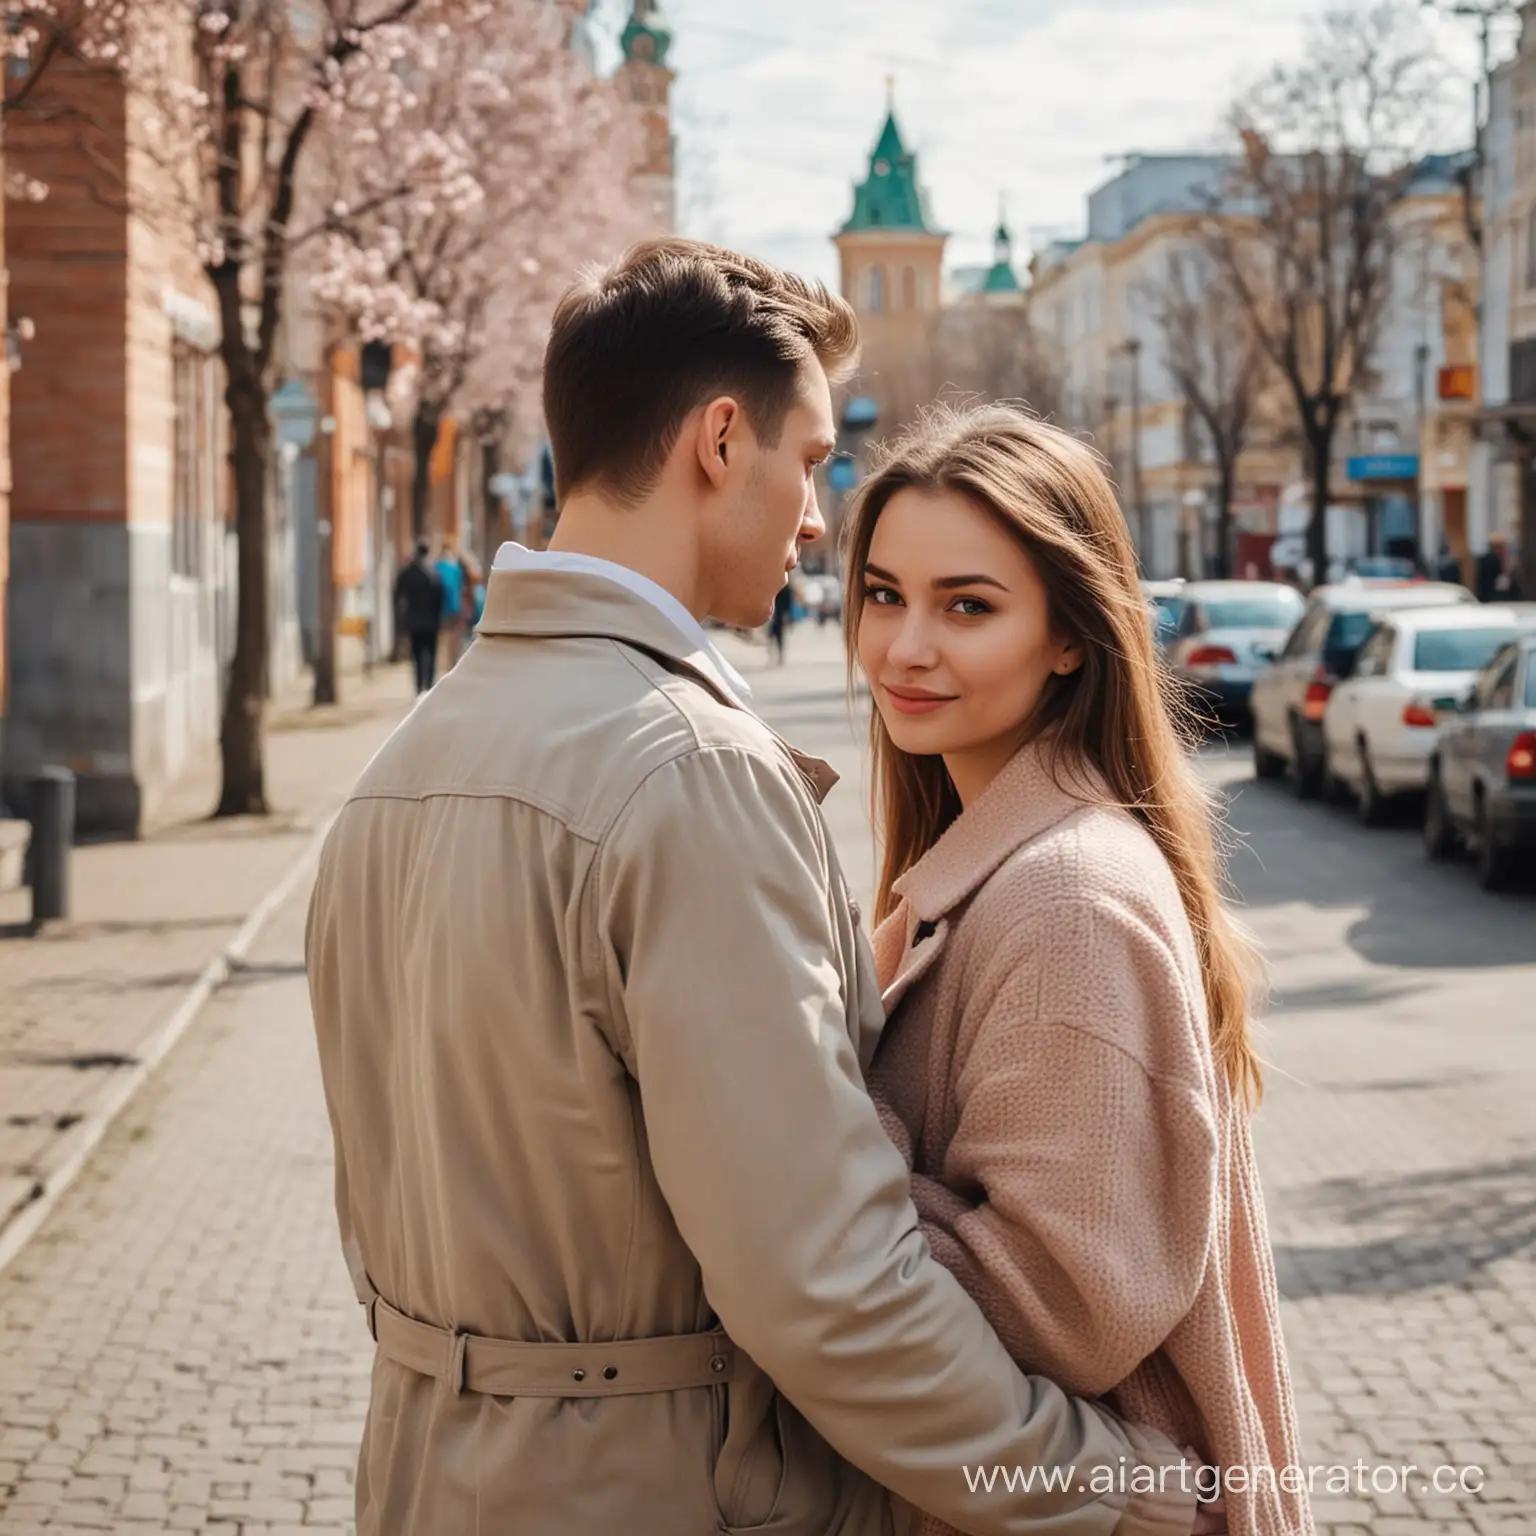 Красивая девушка с парнем, вид со спины, идут по улицам российского города весной.